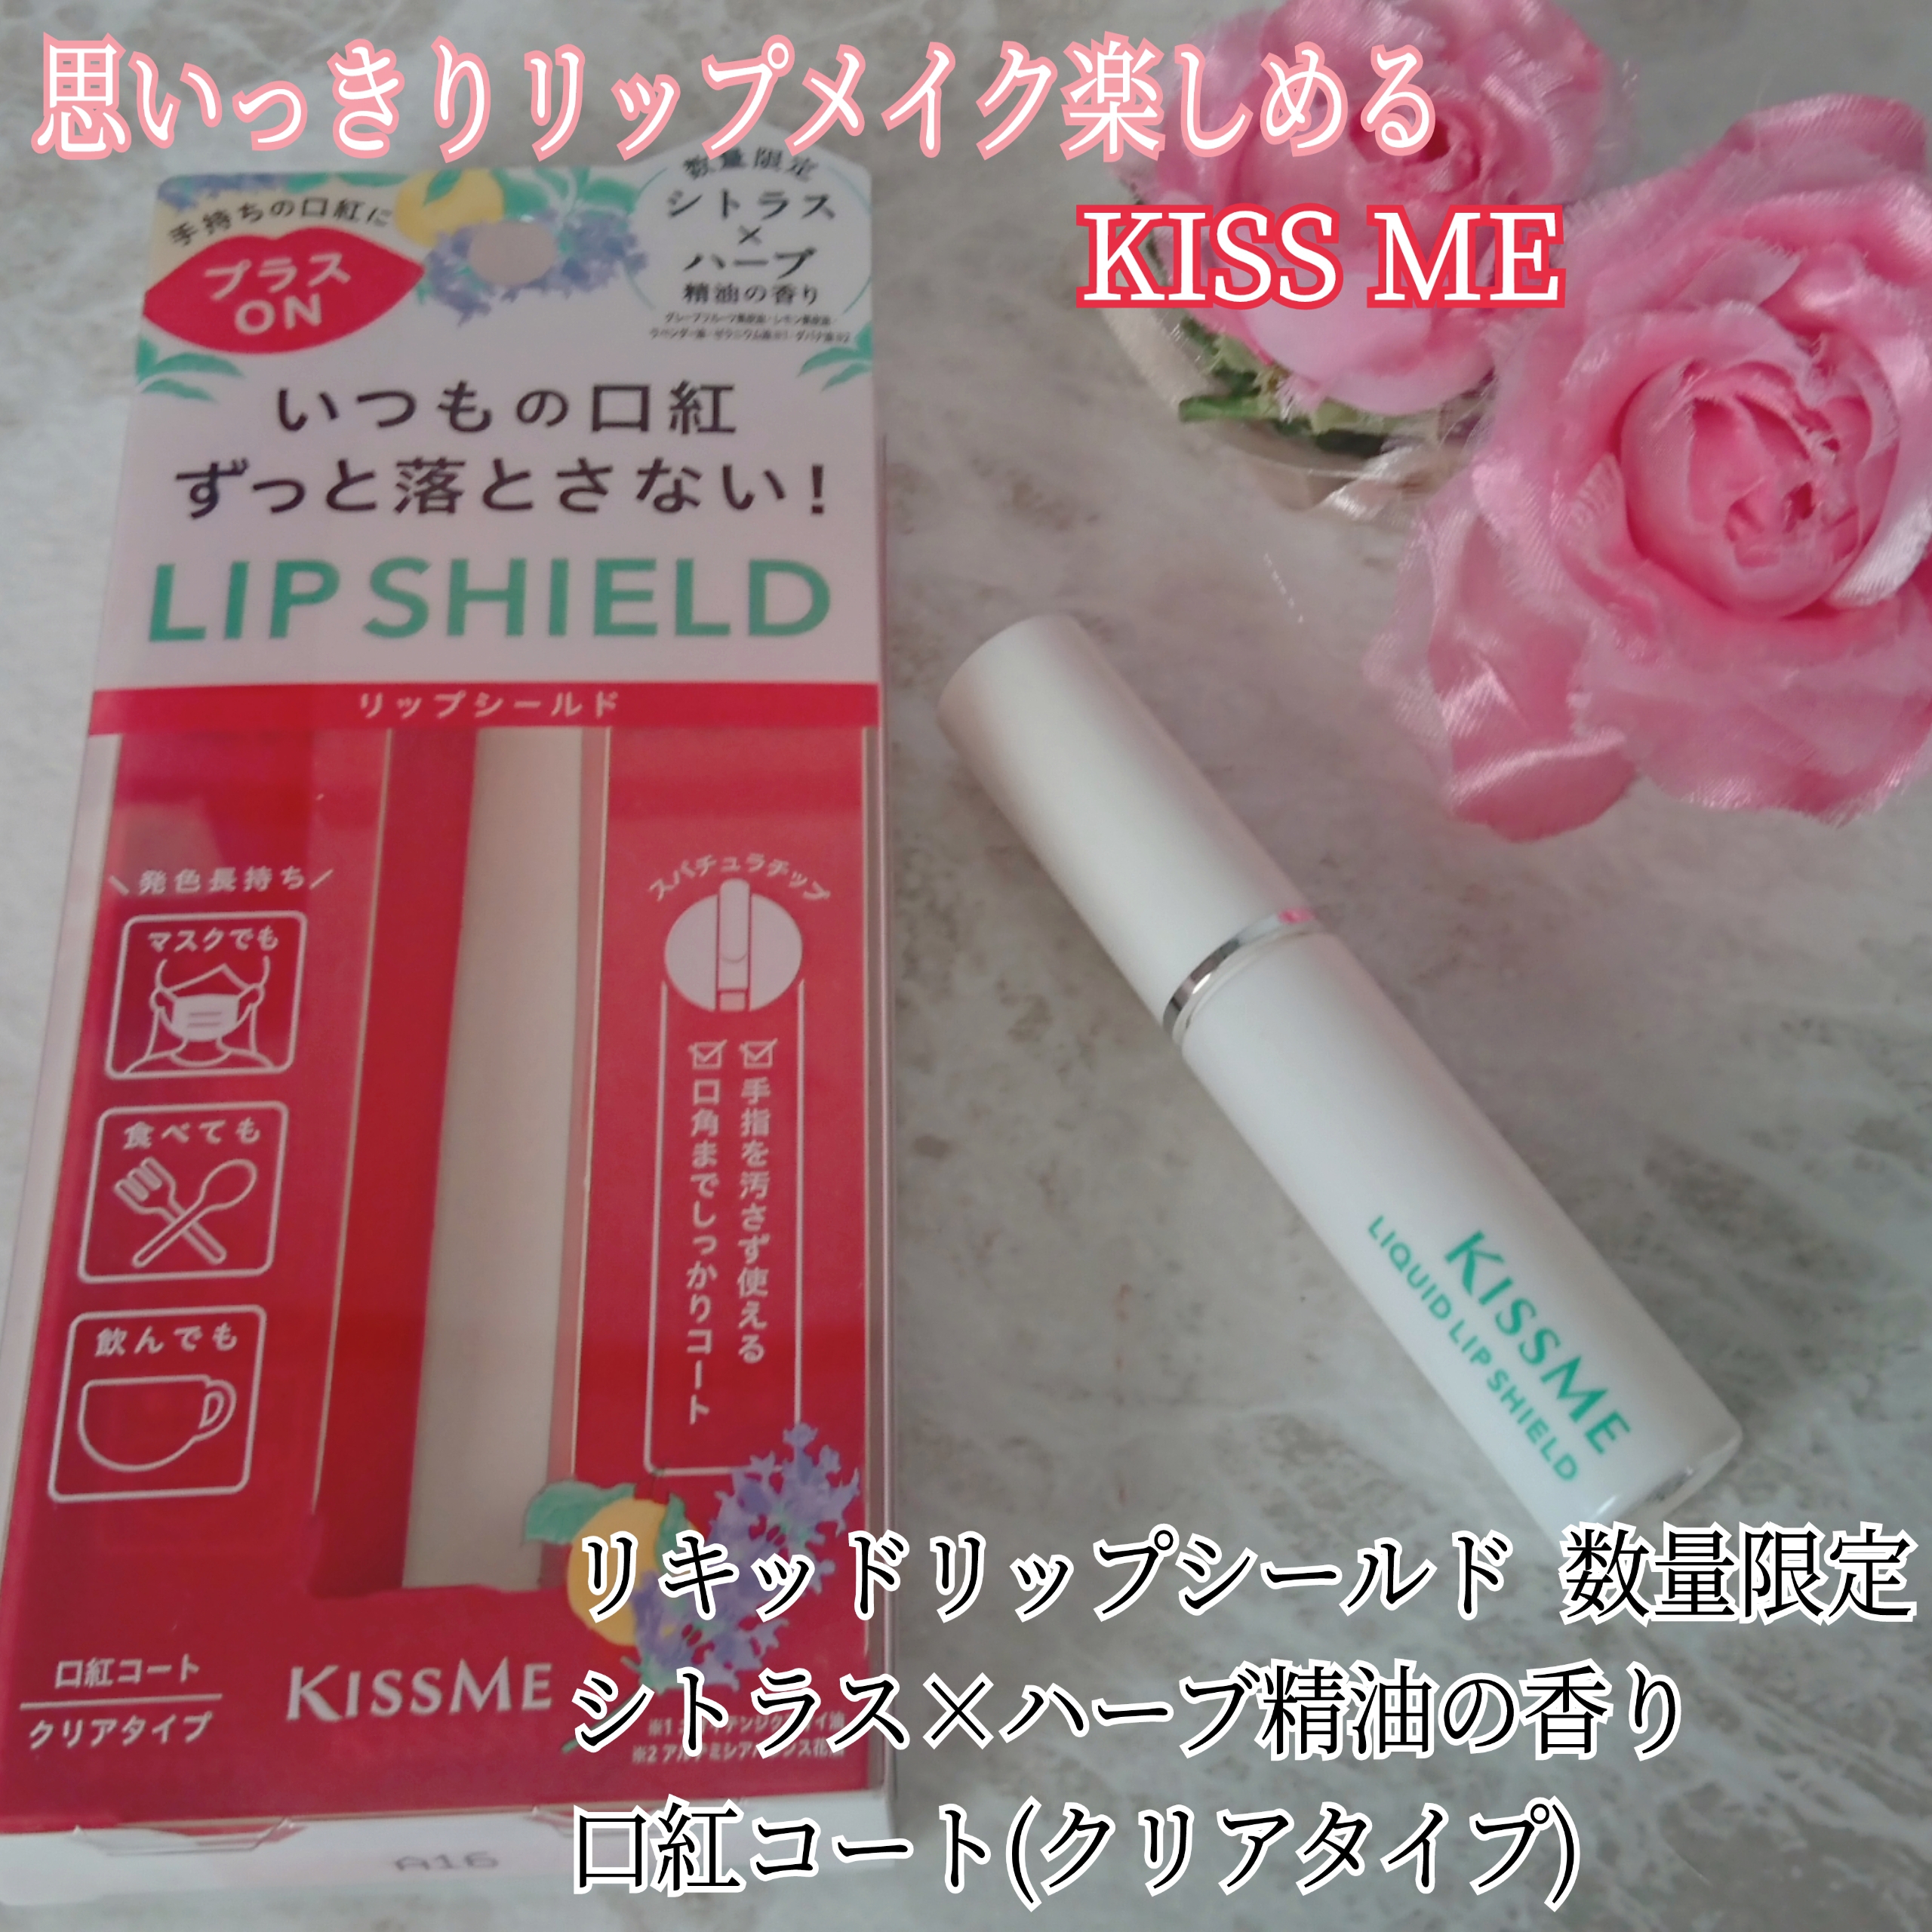 KISSME(キスミー)リキッドリップシールドを使ったYuKaRi♡さんのクチコミ画像1